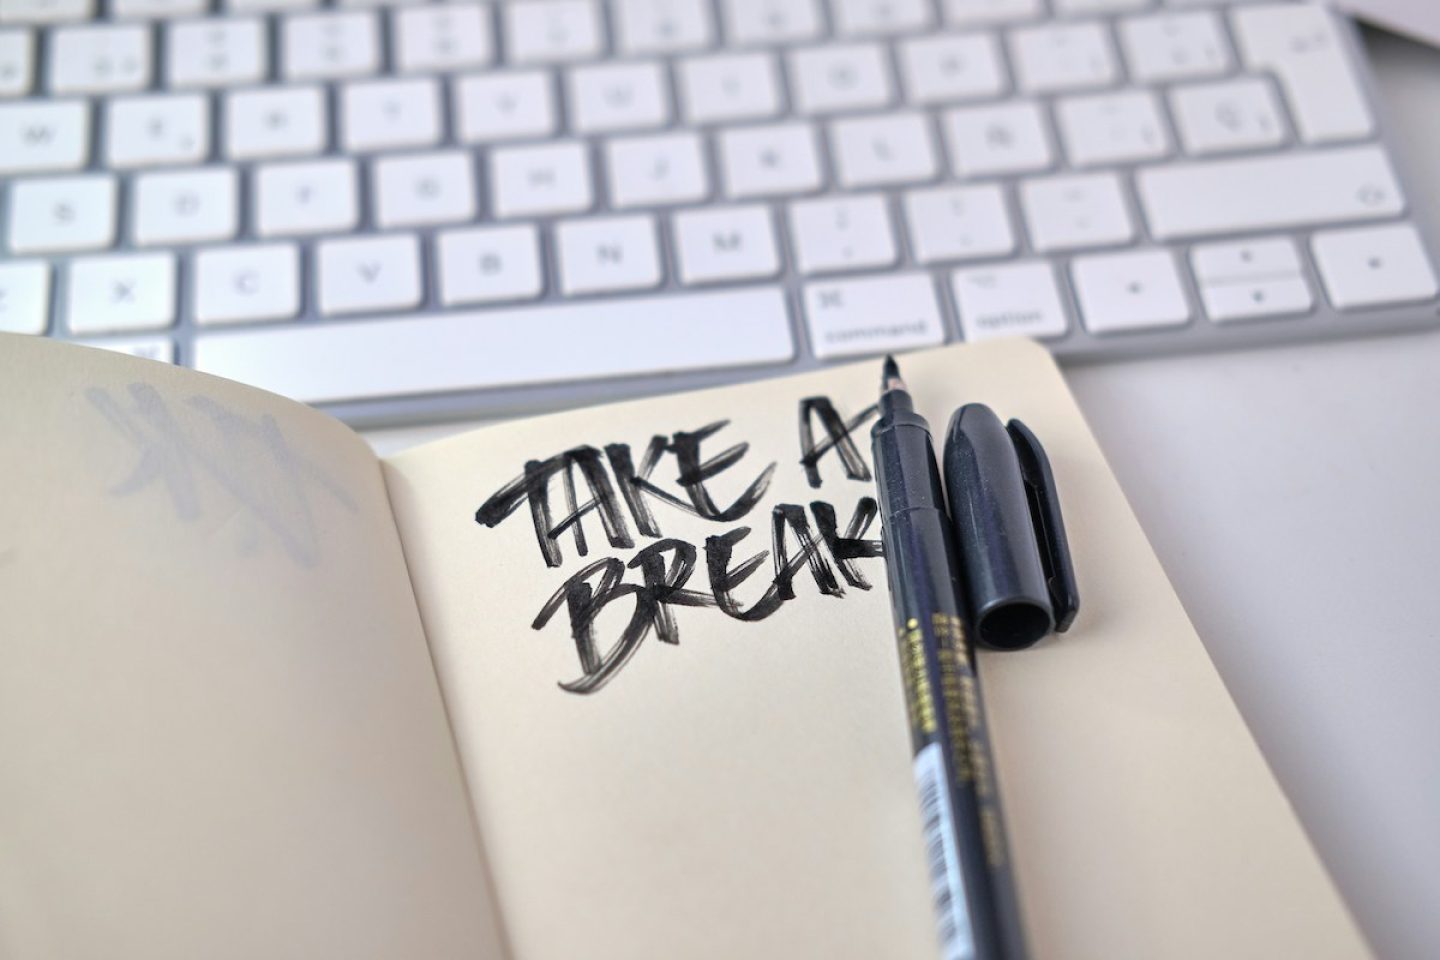 New Workaholics: Wie der Job mit Sinn zum Burnout führen kann